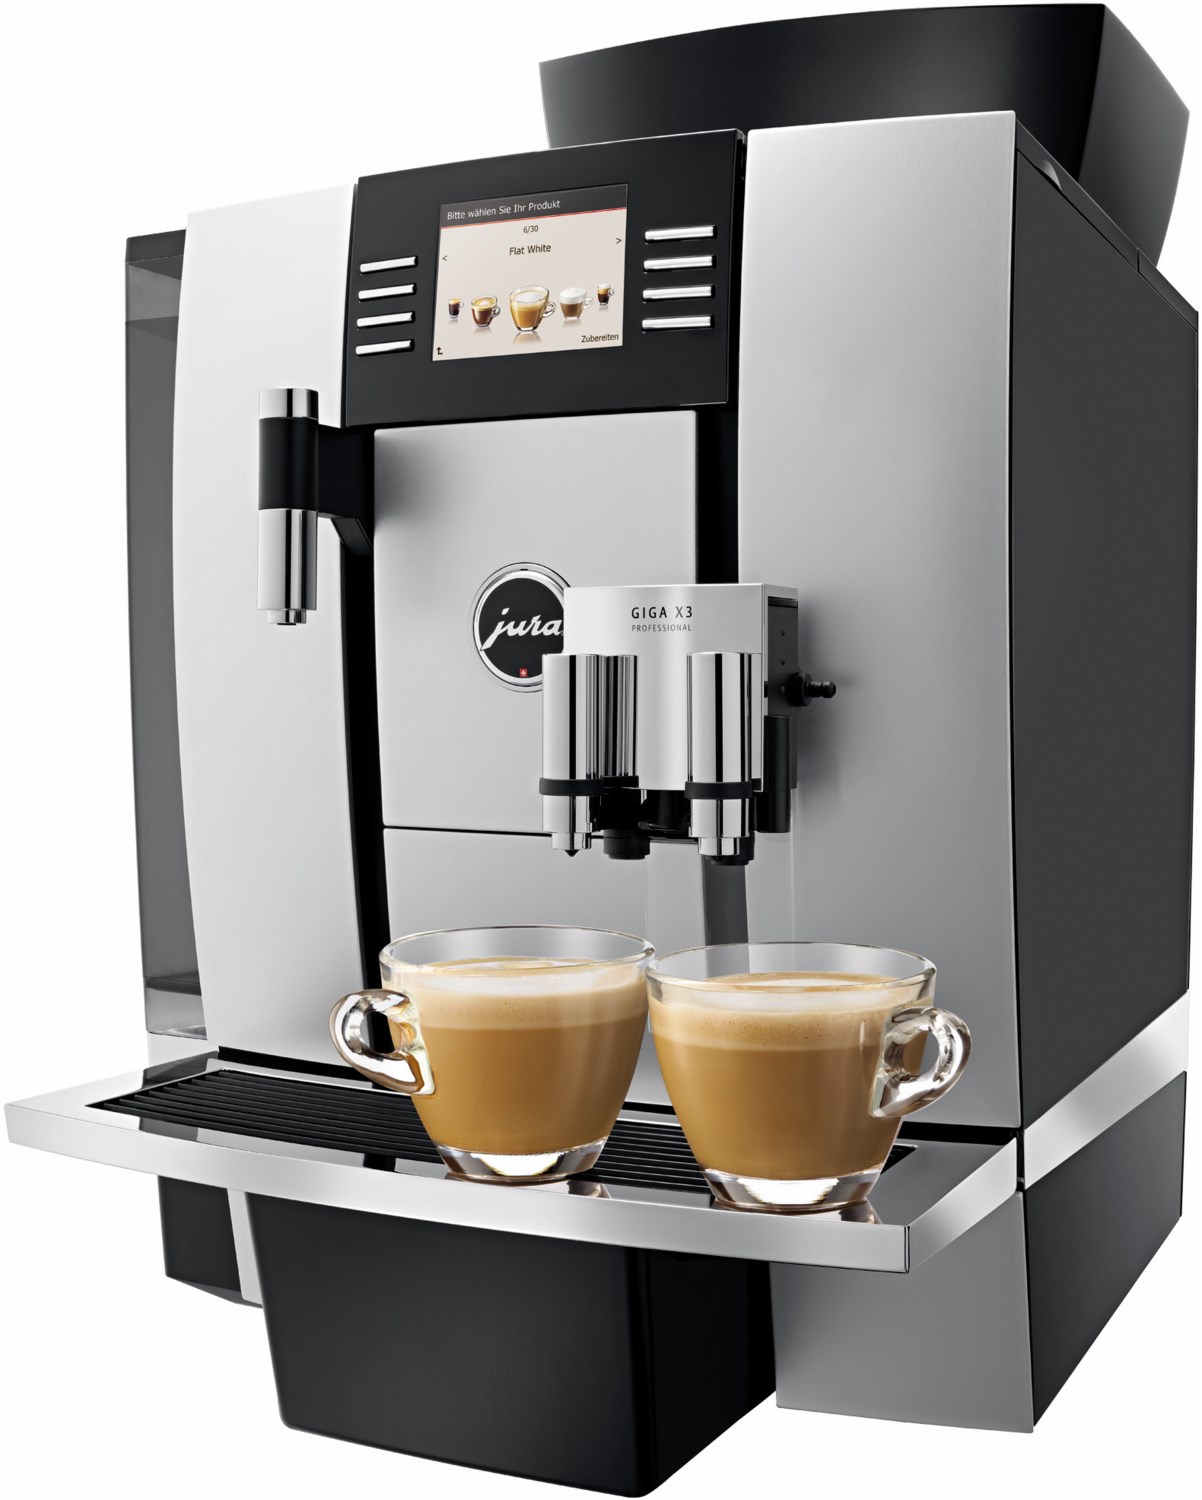 GIGA X3 Professional Kaffee-Vollautomat silber/schwarz von Jura